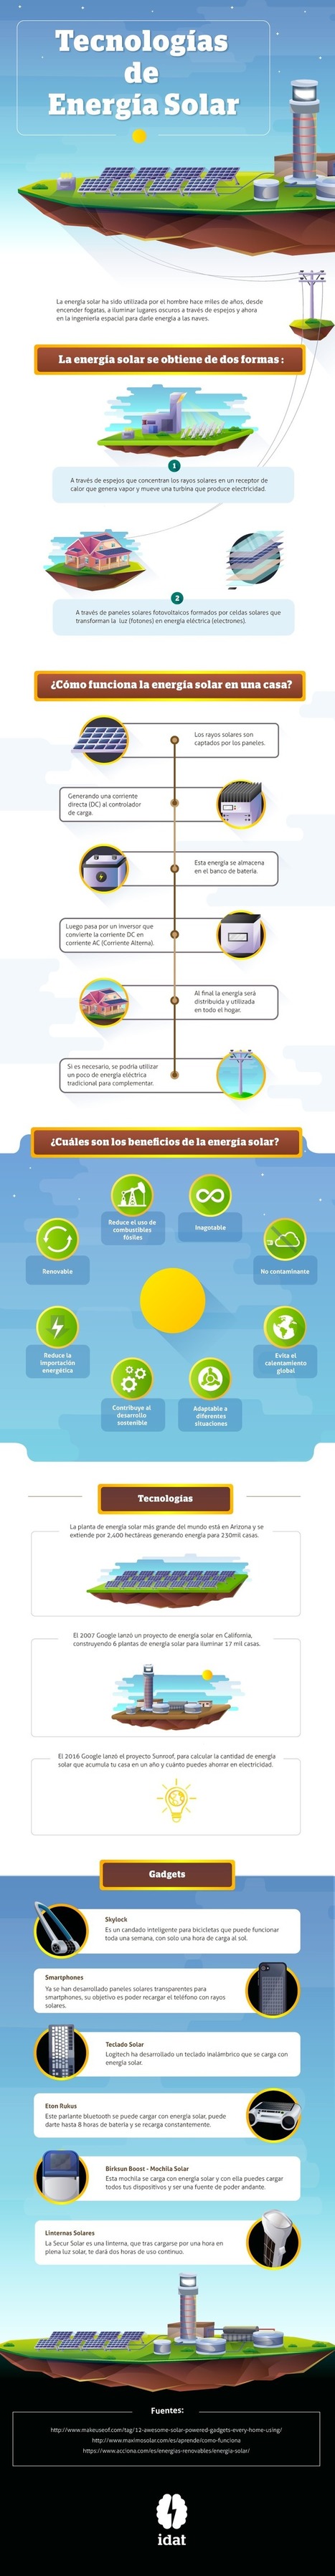 Tecnologías de Energía Solar  | tecno4 | Scoop.it